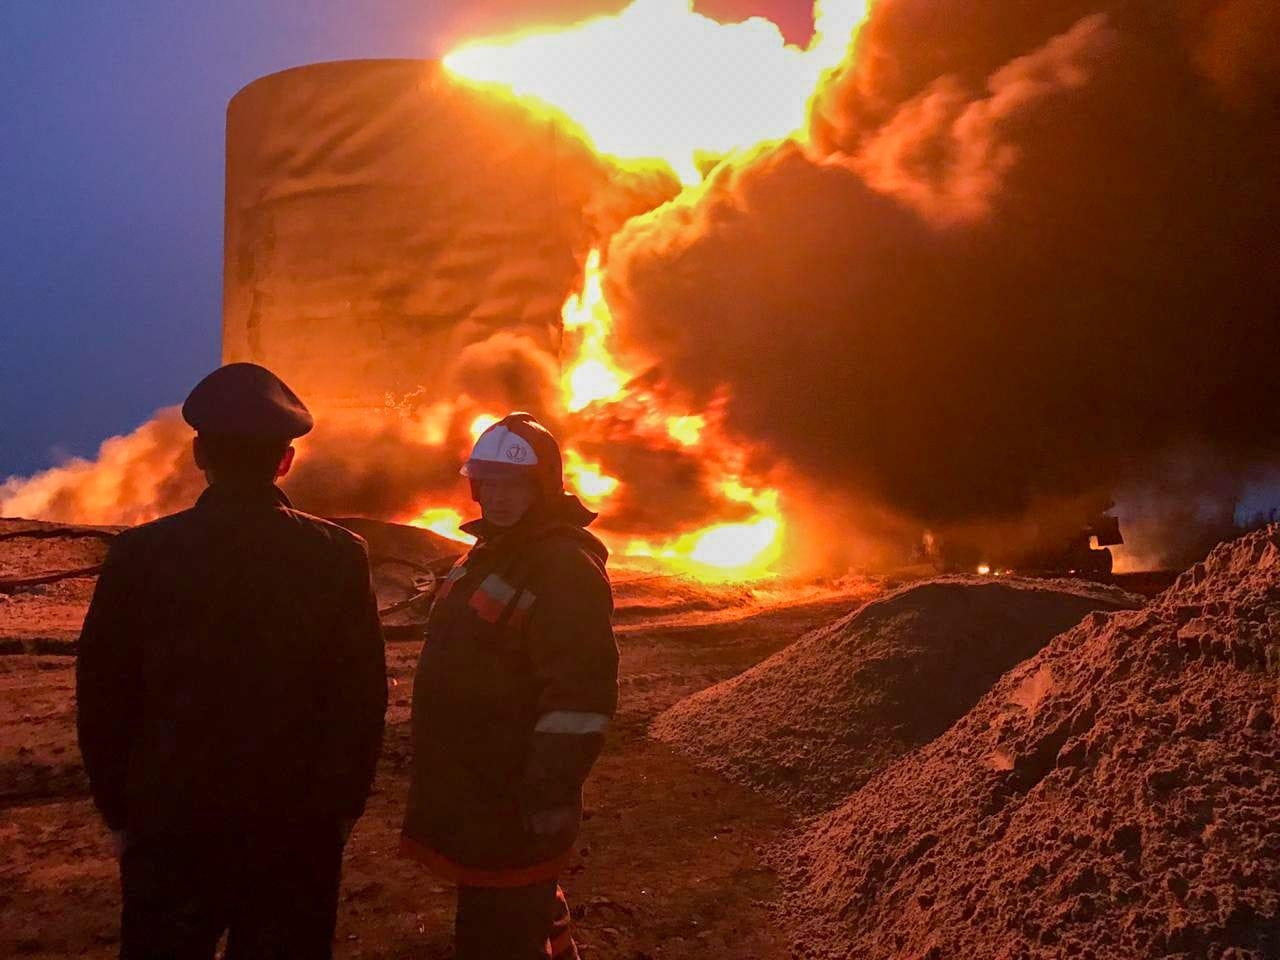 Пожар на нефтехранилище в Саскылахе не скажется на жизнедеятельности поселка - власти Якутии